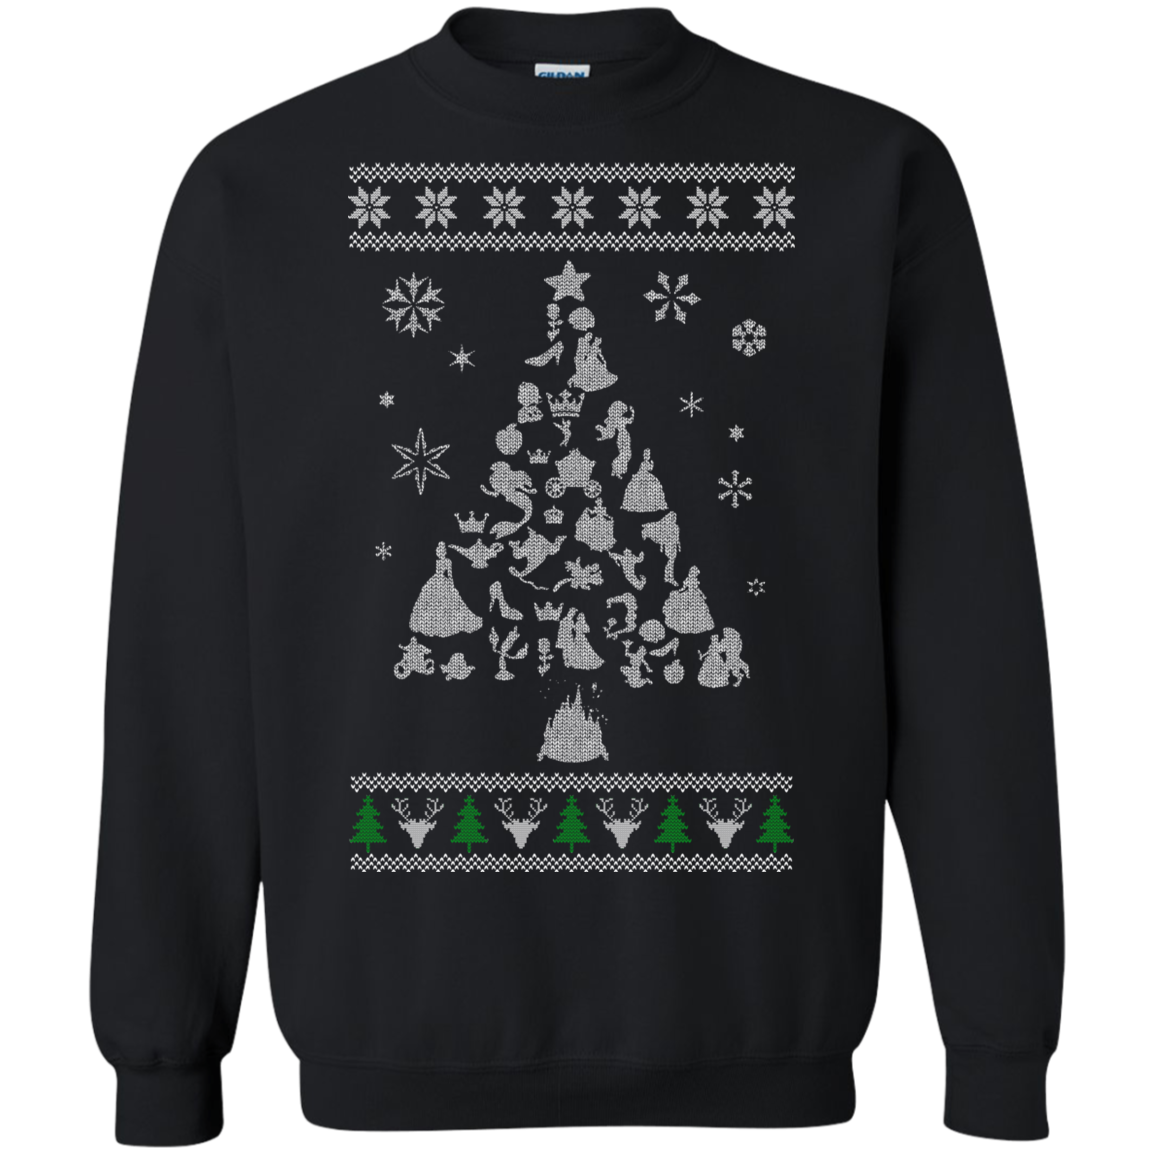 Disney Princess Ugly Christmas Sweater Xmas Tree - Teesmiley